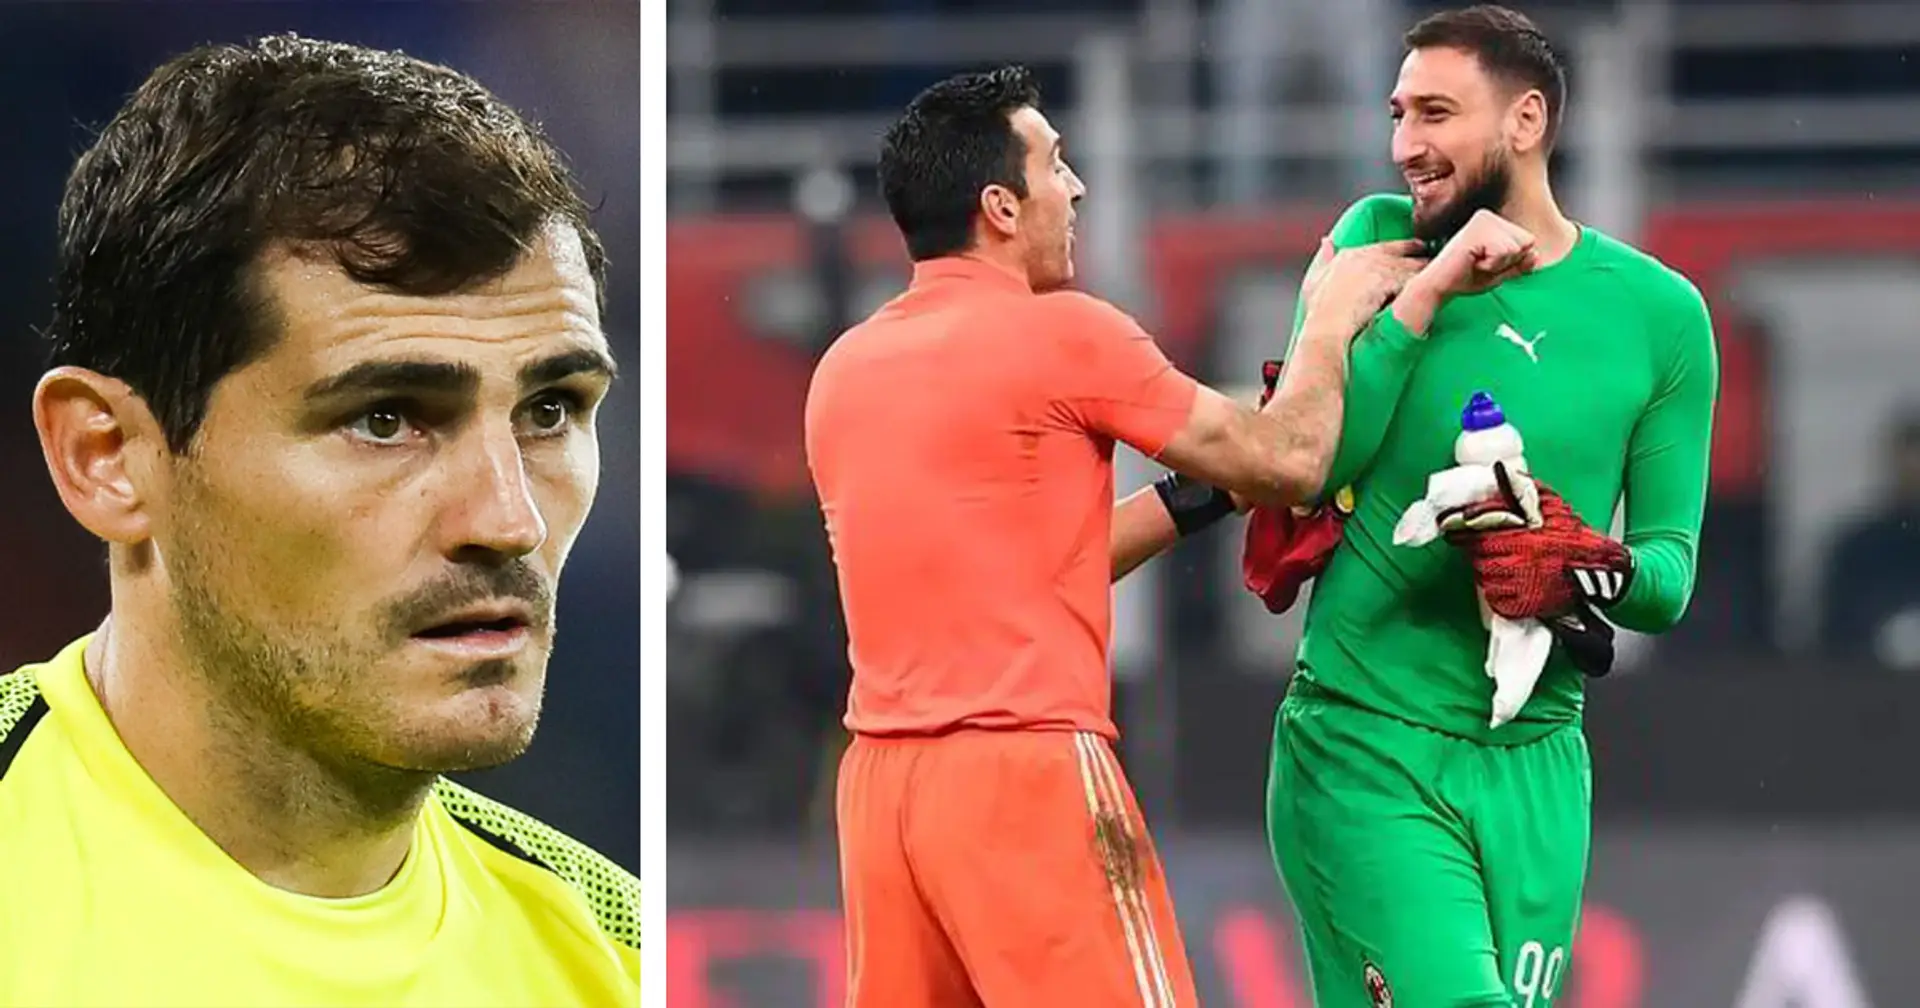 "Donnarumma dovrebbe giocare per un club più competitivo in Europa": il consiglio di Casillas alla Juventus